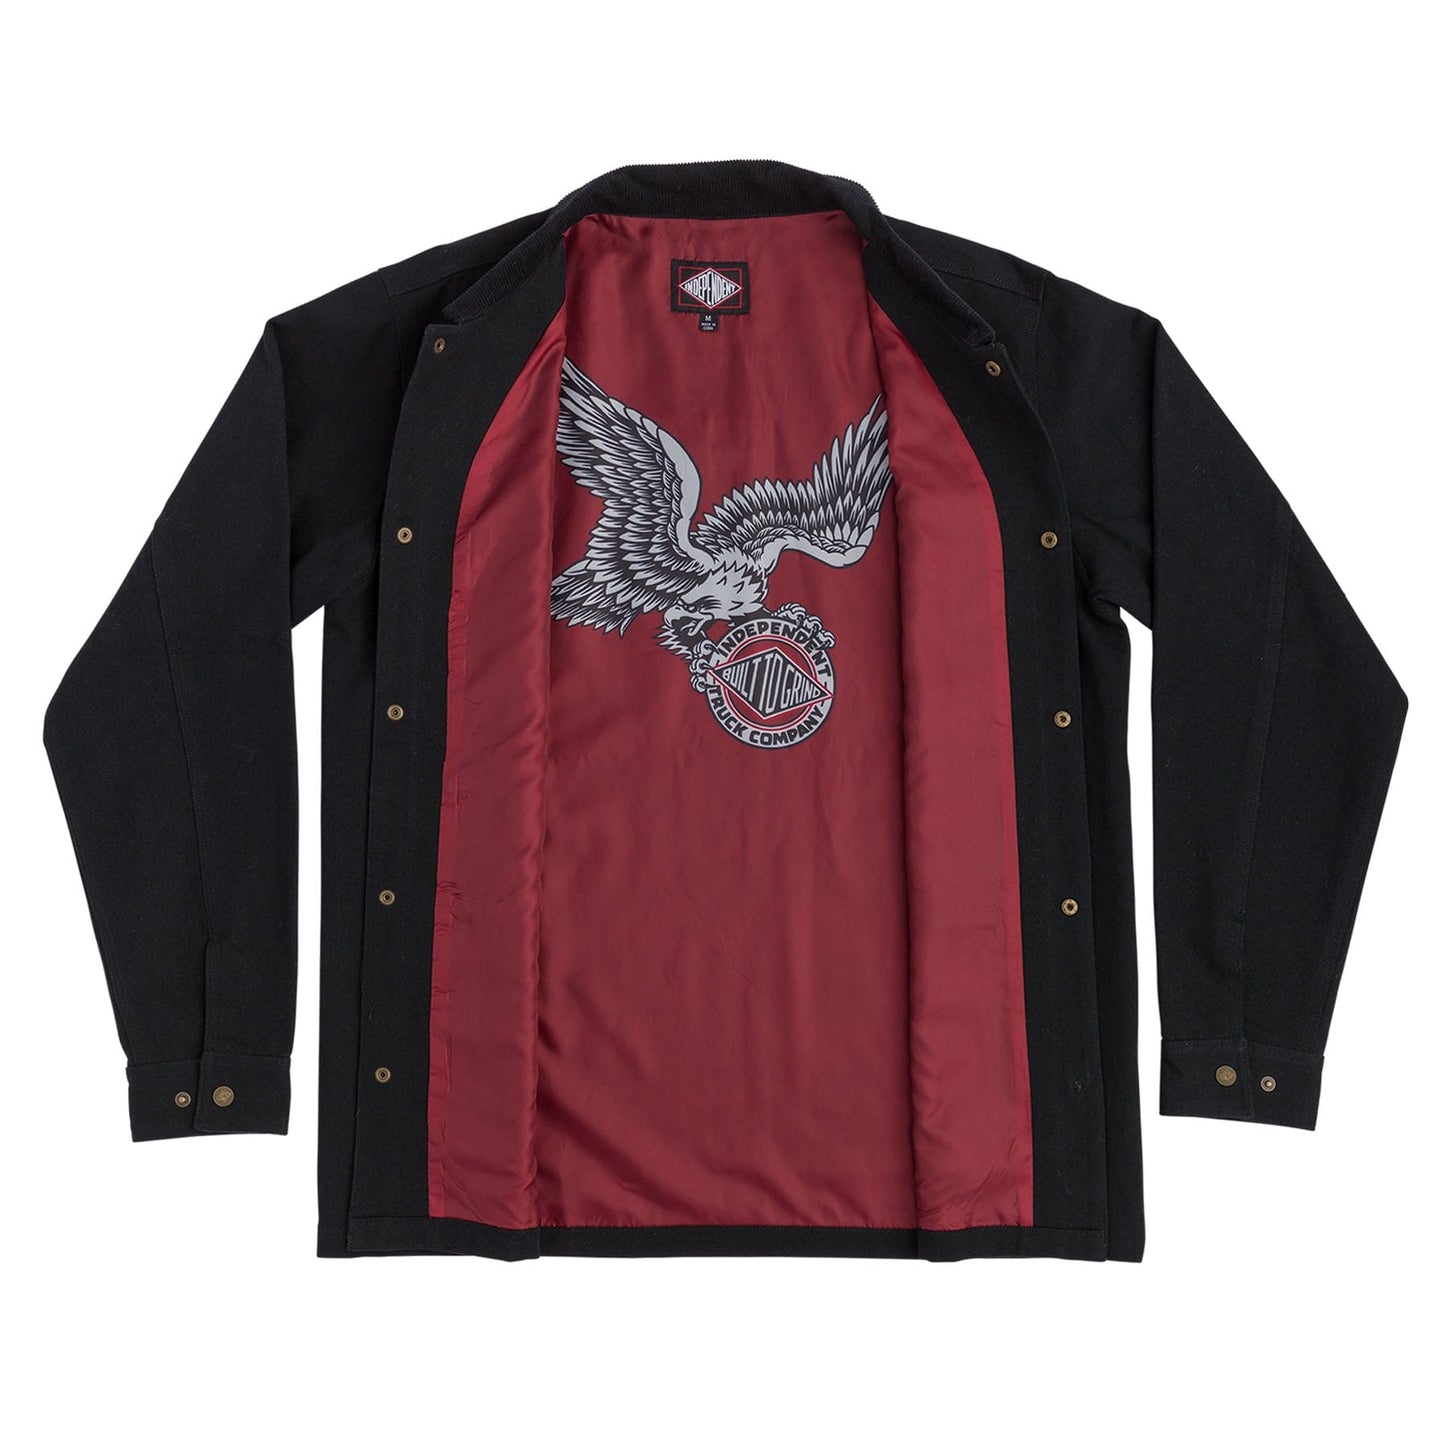 Independent | Springer Chore Coat Jacket - Black Duck Canvas